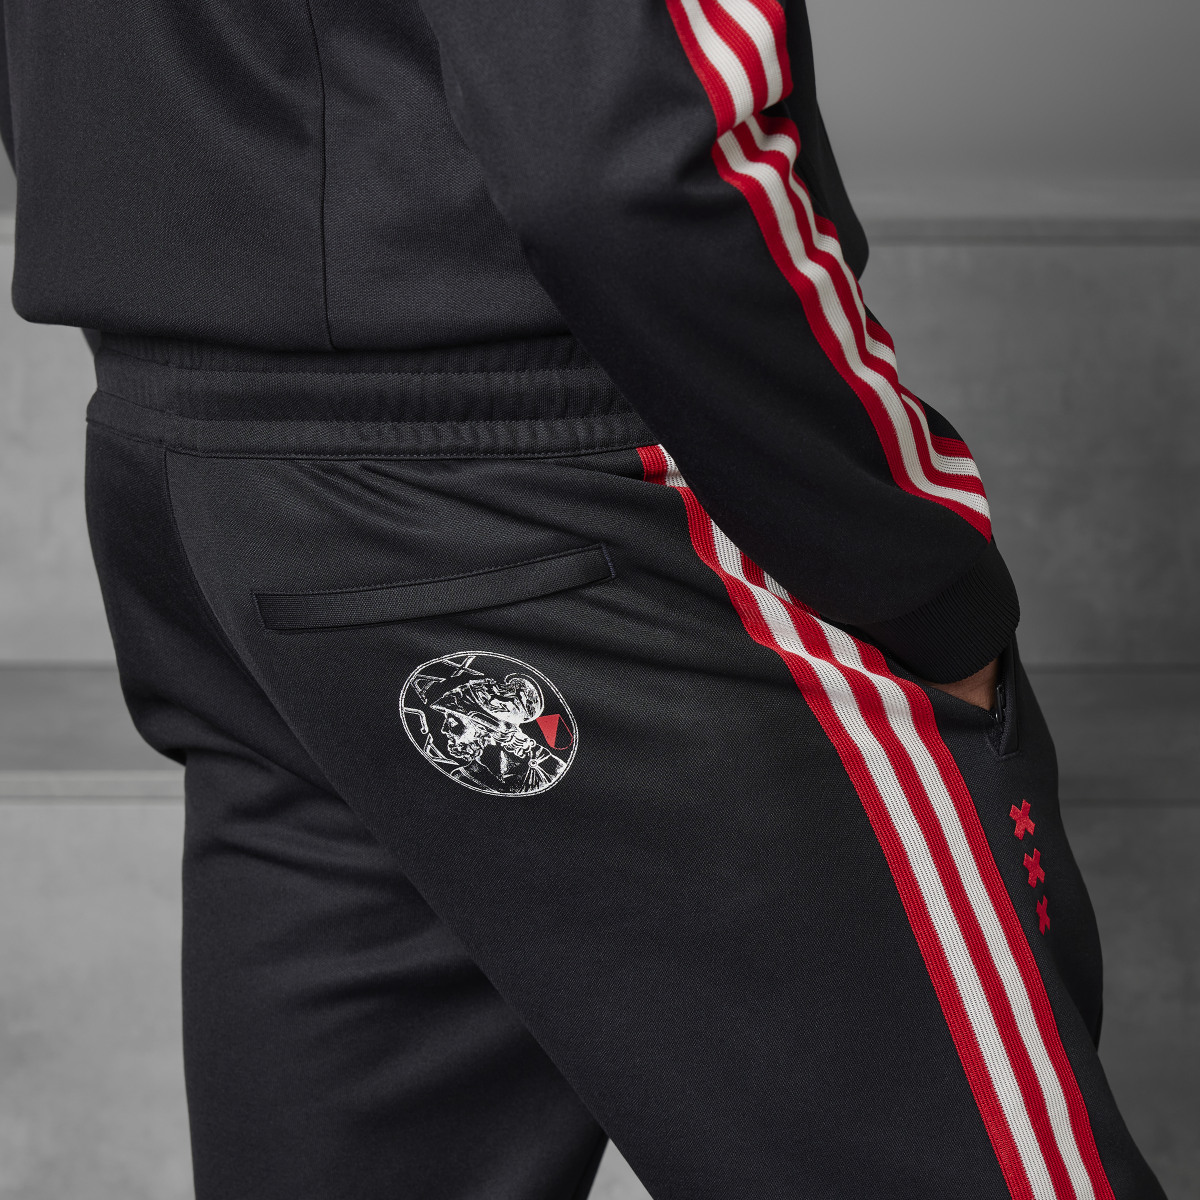 Adidas Track pants OG Ajax Amsterdam. 8